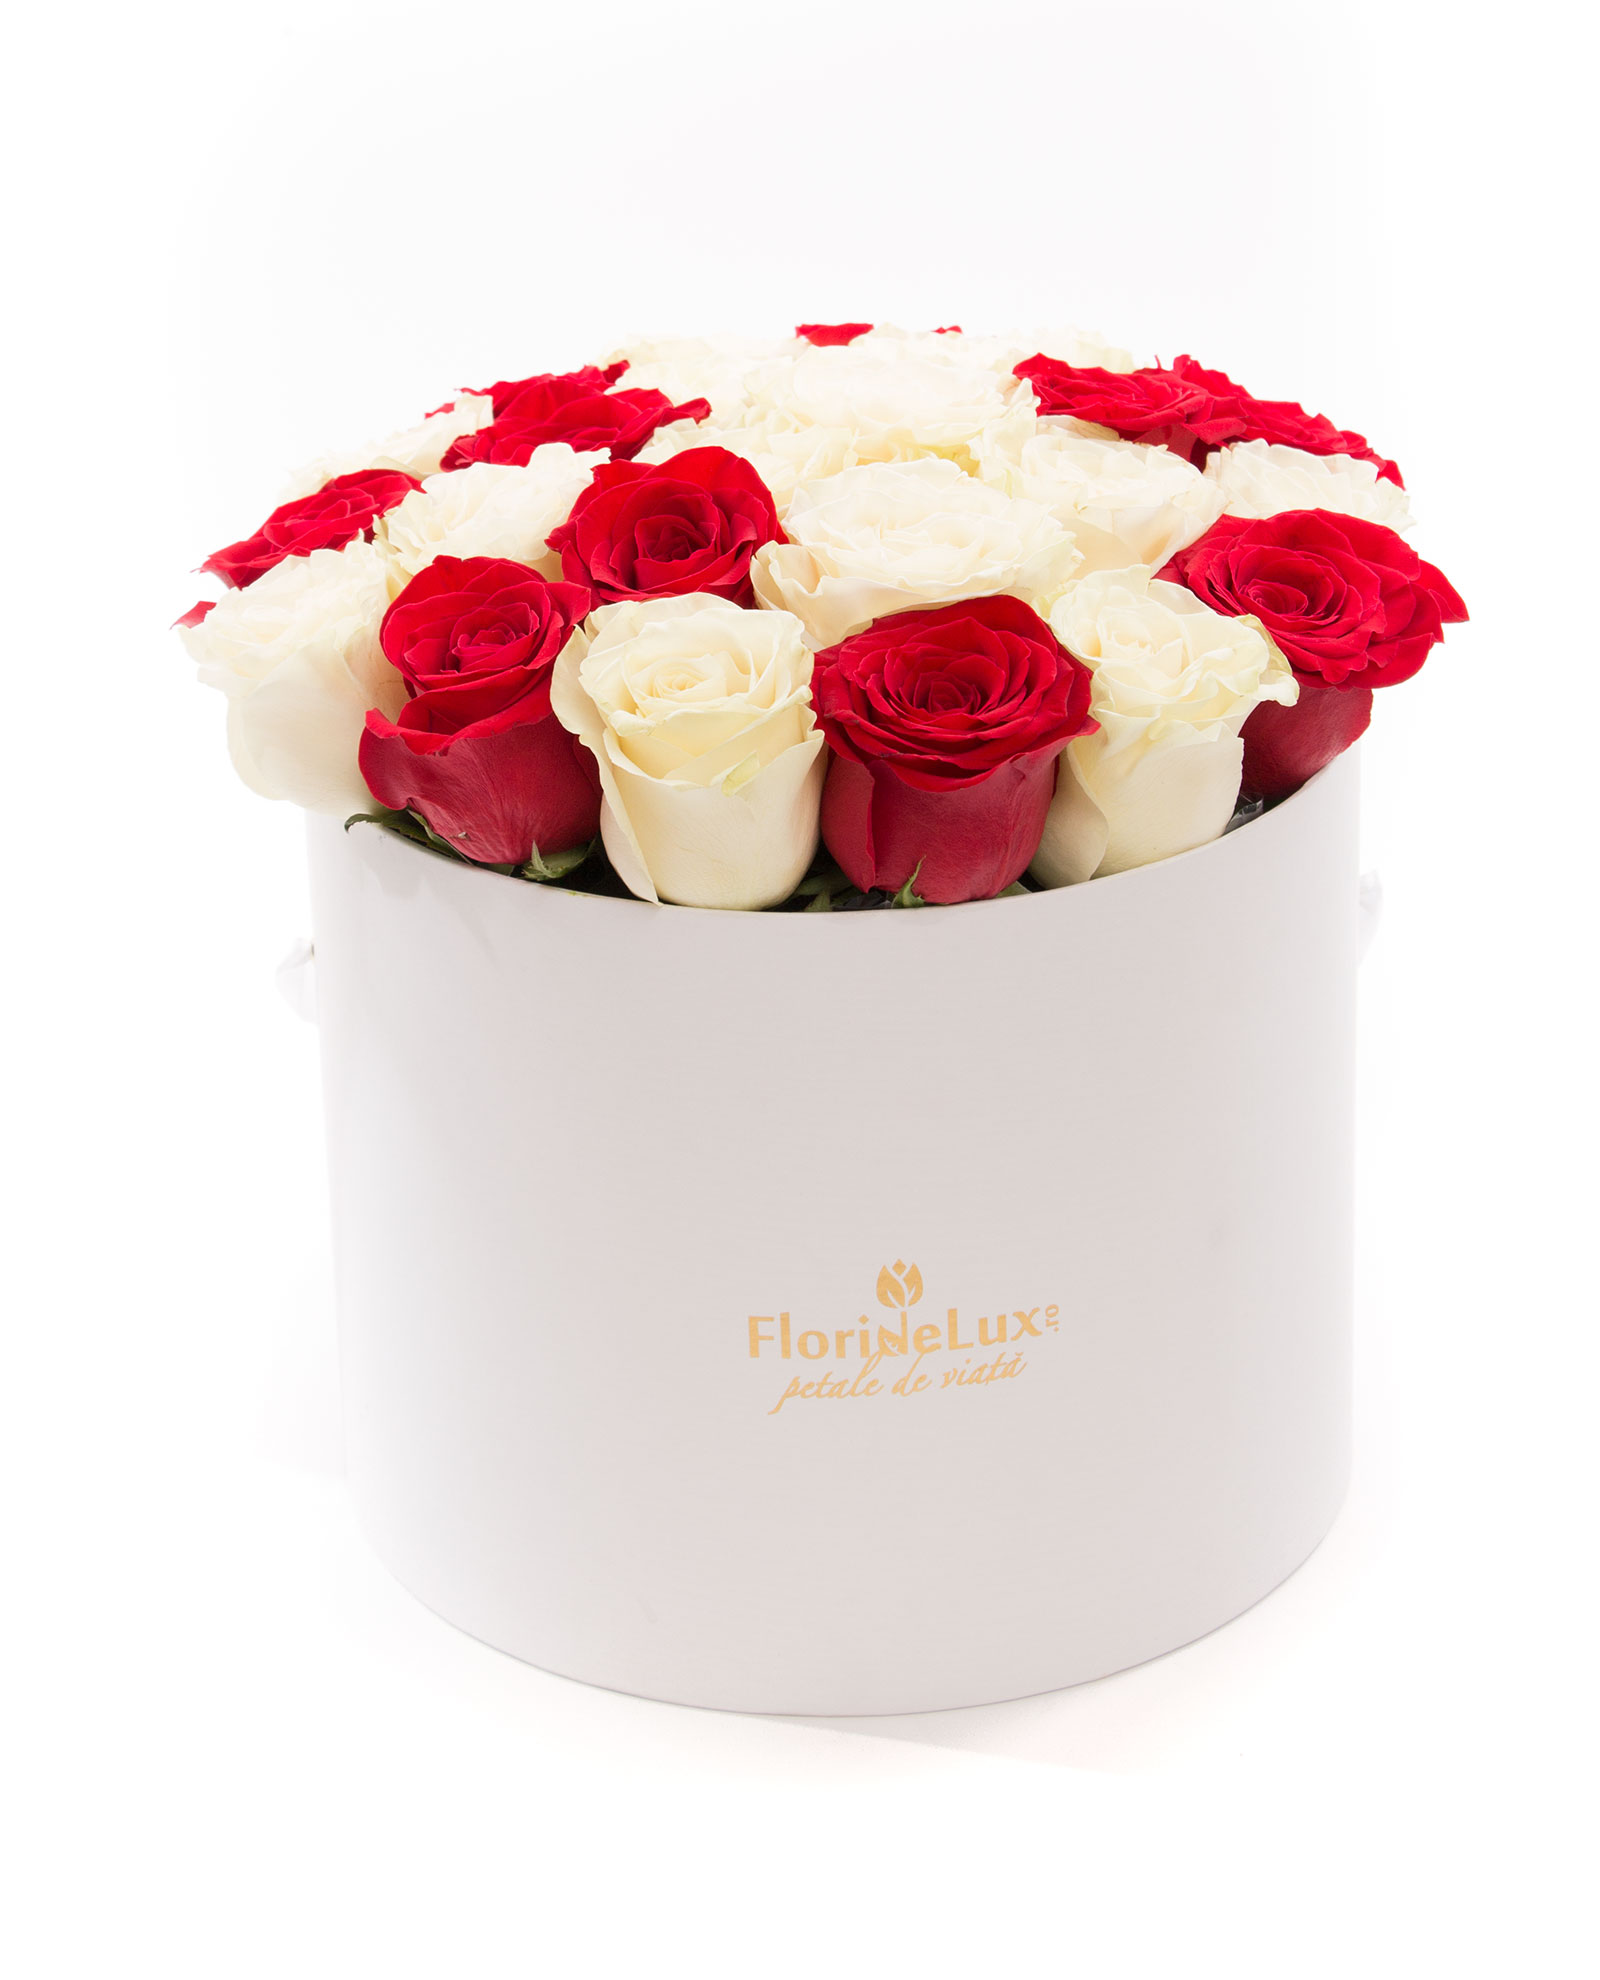 Cutie de lux cu 27 trandafiri albi si rosii